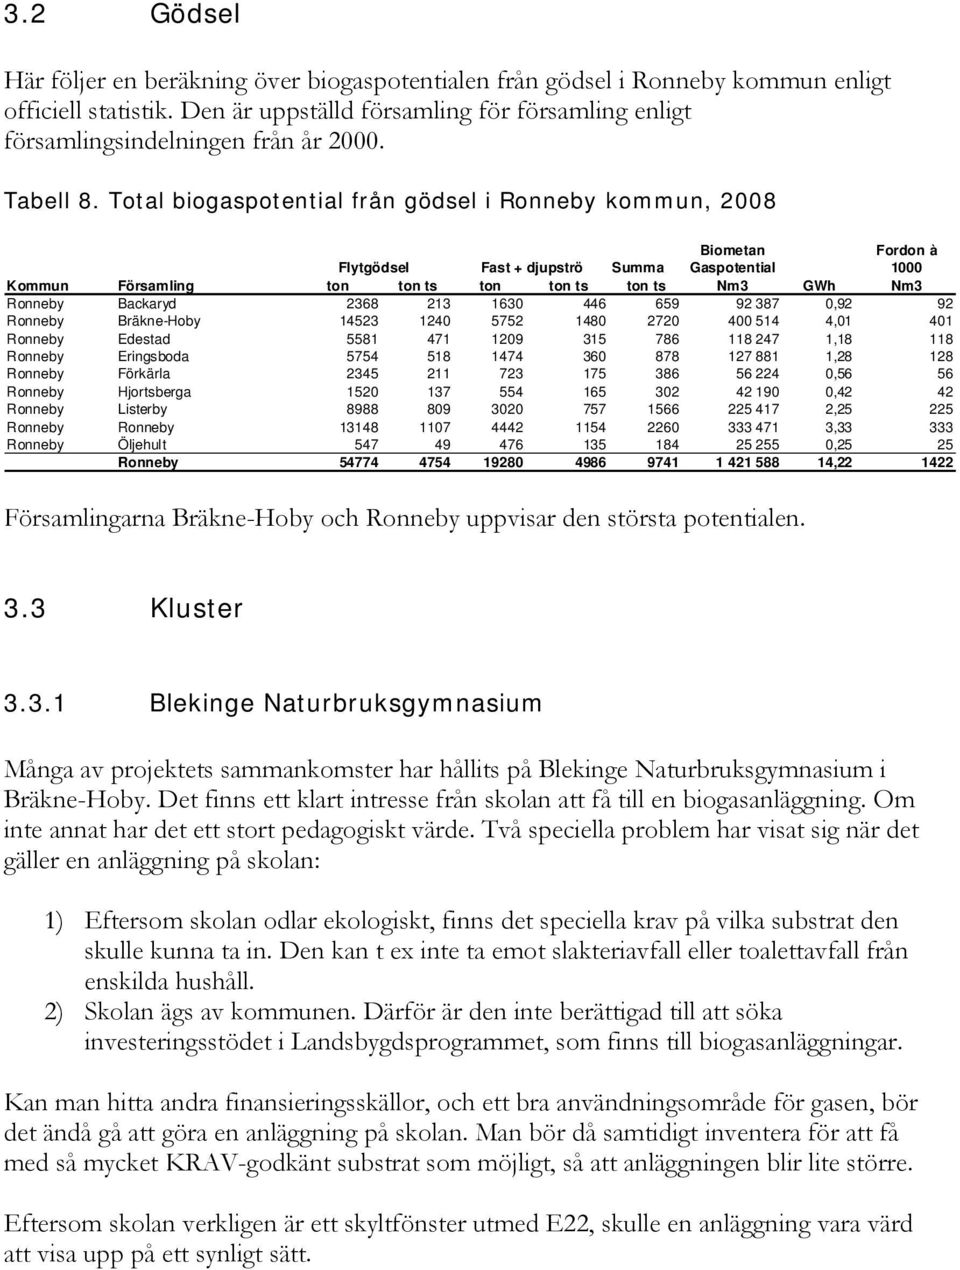 Total biogaspotential från gödsel i Ronneby kommun, 2008 Biometan Fordon à Flytgödsel Fast + djupströ Summa Gaspotential 1000 Kommun Församling ton ton ts ton ton ts ton ts Nm3 GWh Nm3 Ronneby